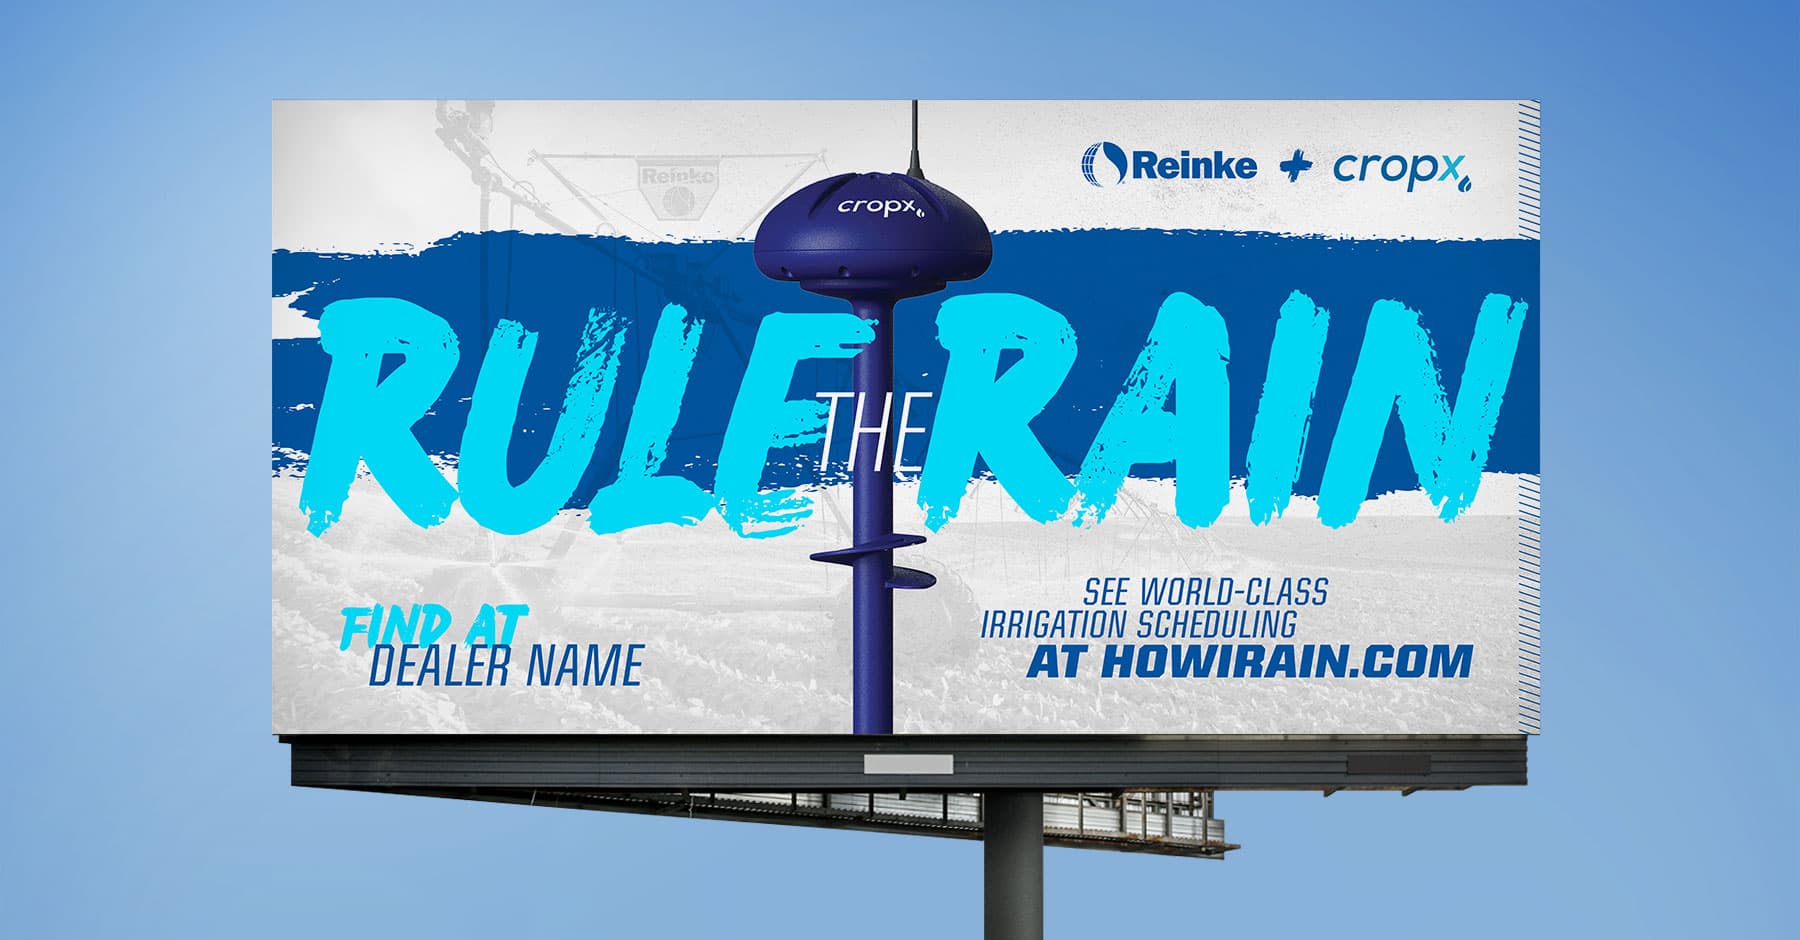 Reinke rule the rain billboard in the sky